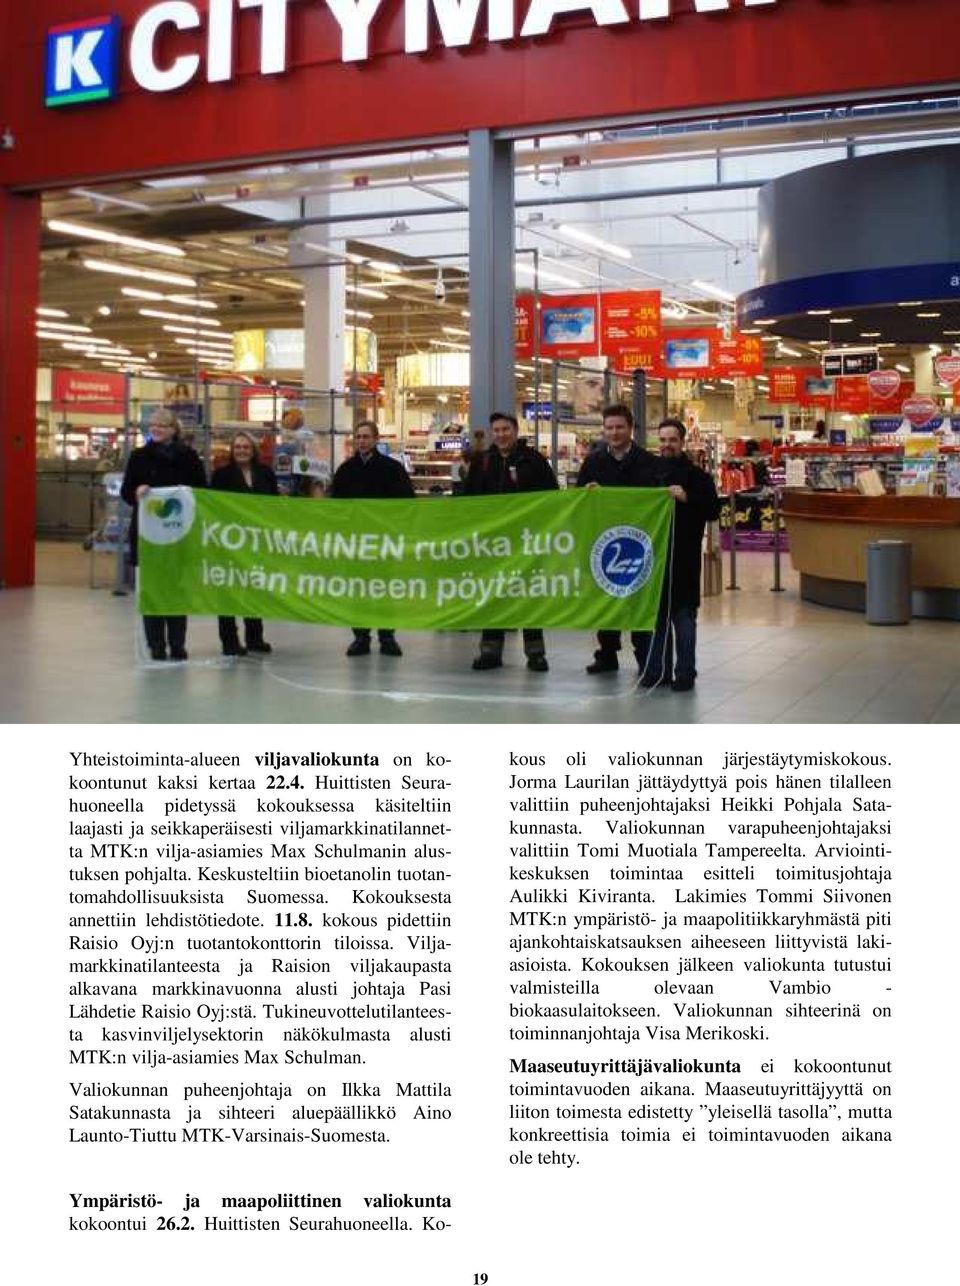 Keskusteltiin bioetanolin tuotantomahdollisuuksista Suomessa. Kokouksesta annettiin lehdistötiedote. 11.8. kokous pidettiin Raisio Oyj:n tuotantokonttorin tiloissa.